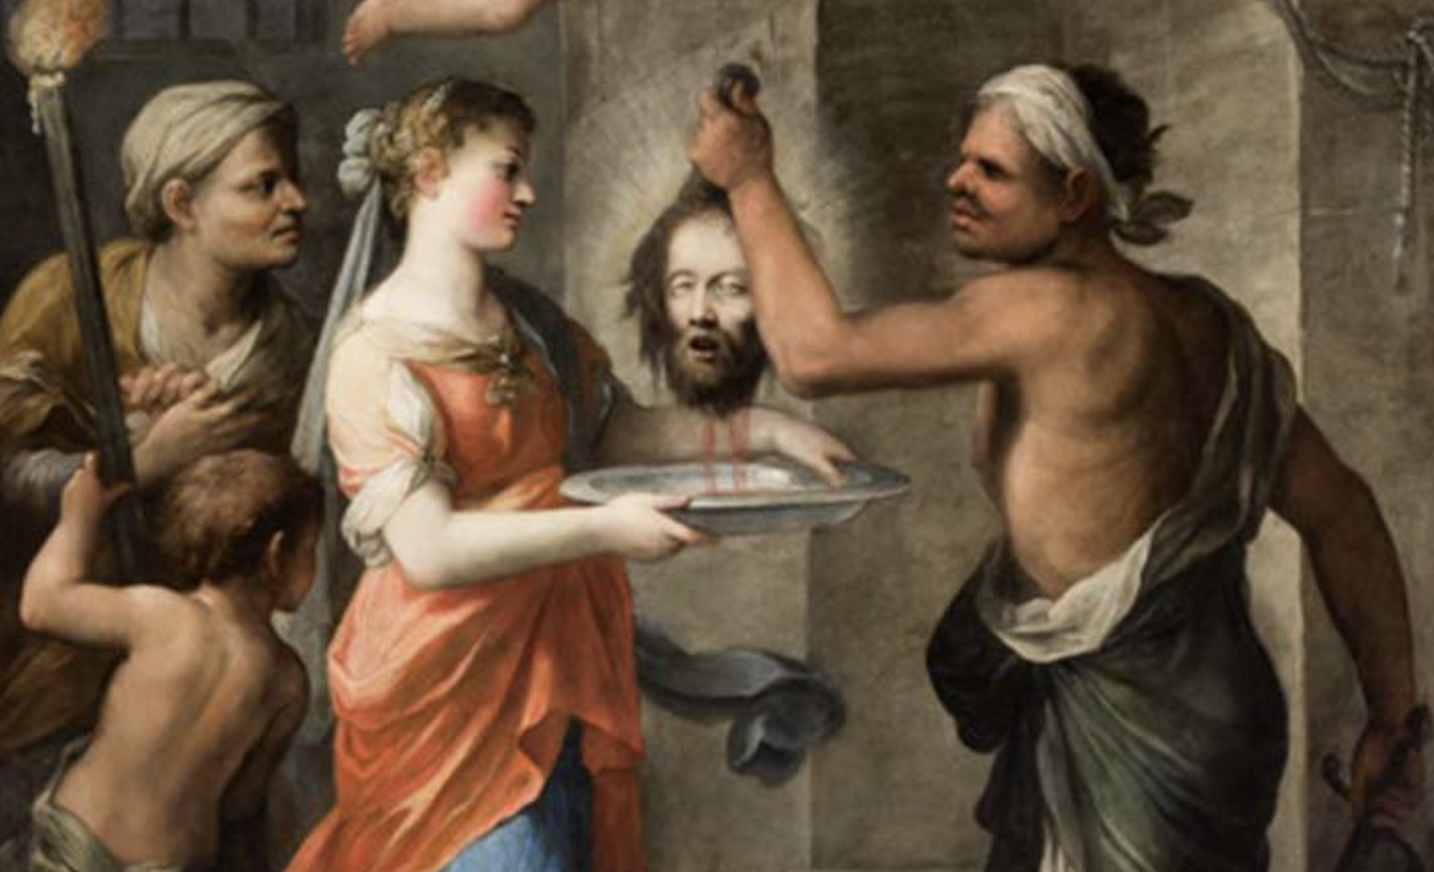 Grazie a un pesante meccanismo la pala può ruotare, mostrando l’altra faccia del dipinto: la decapitazione del Santo, stessa sorte che attendeva i condannati a morte